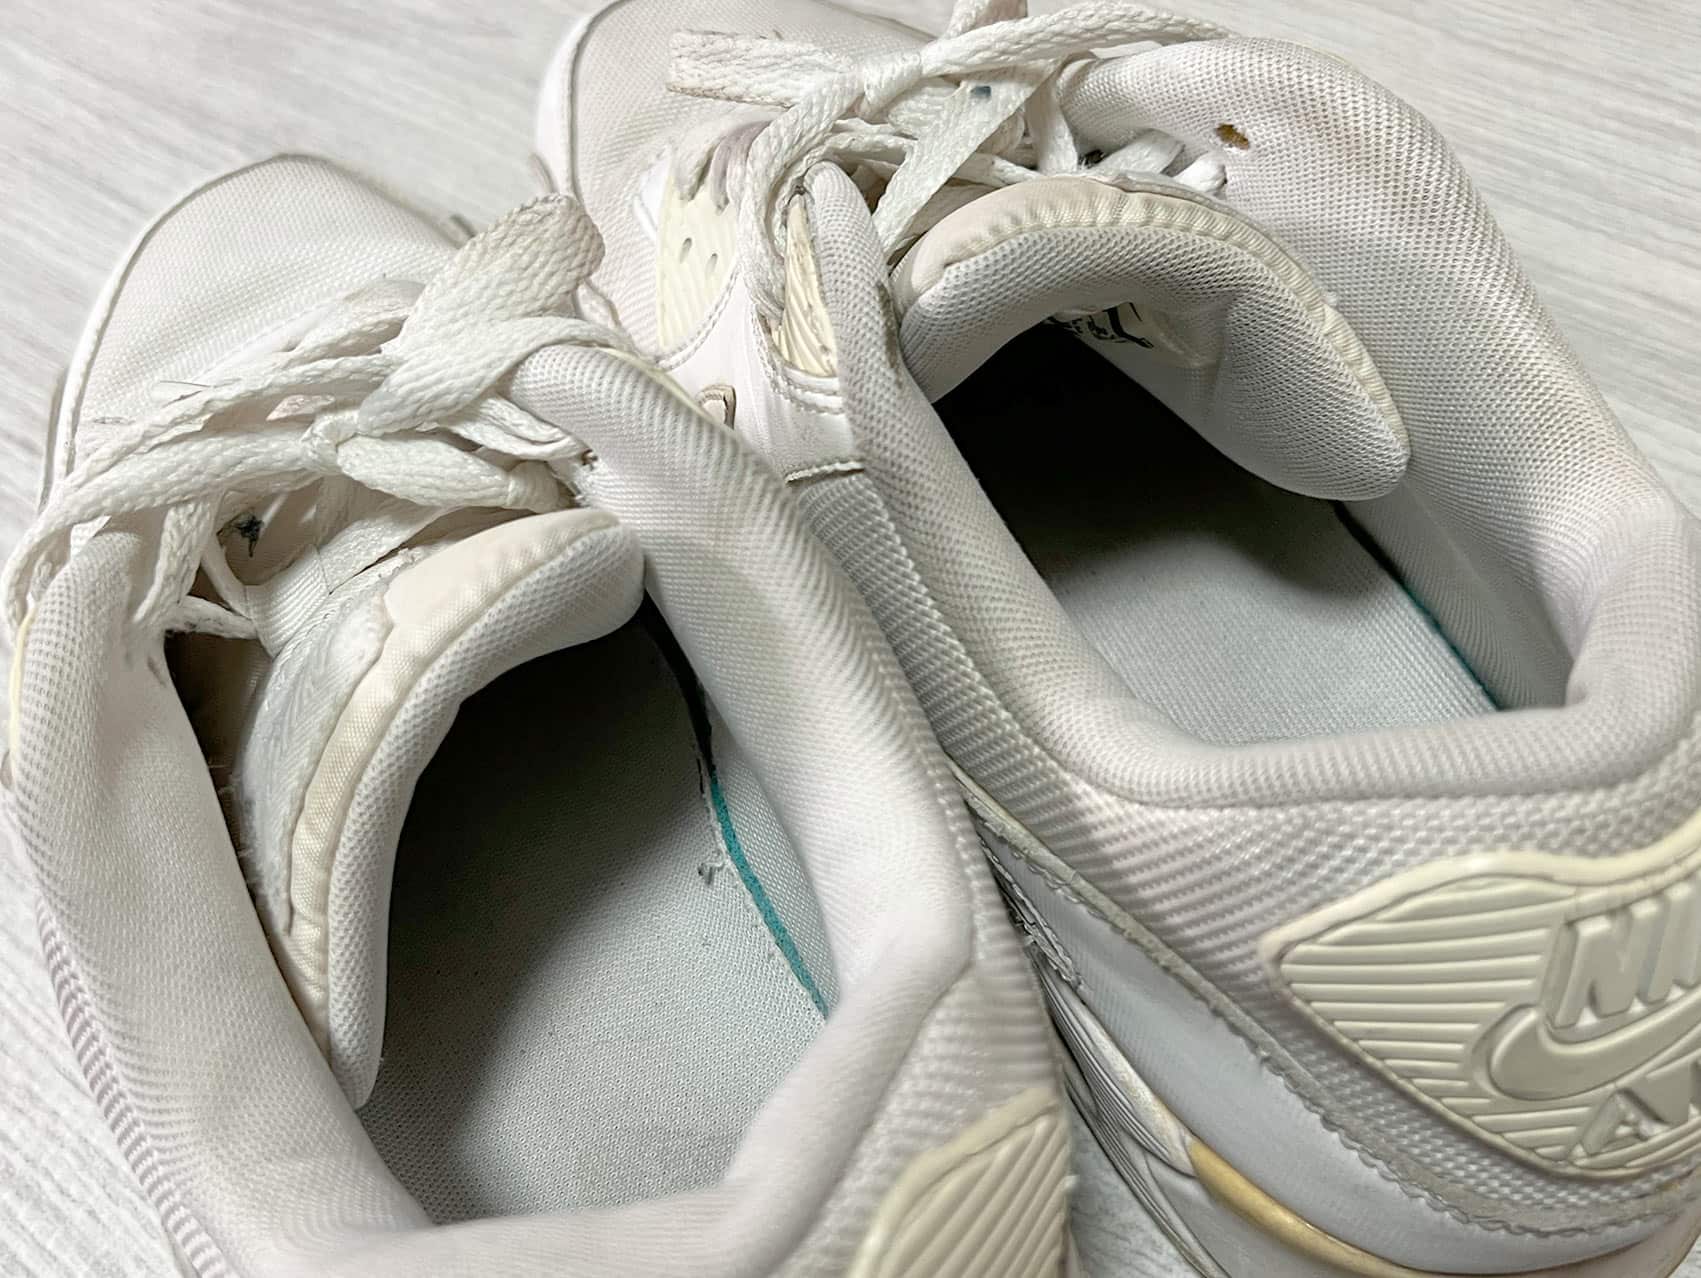 洗う前にナイキ「エアマックス90」の汚れを確認 靴の内側もひどい